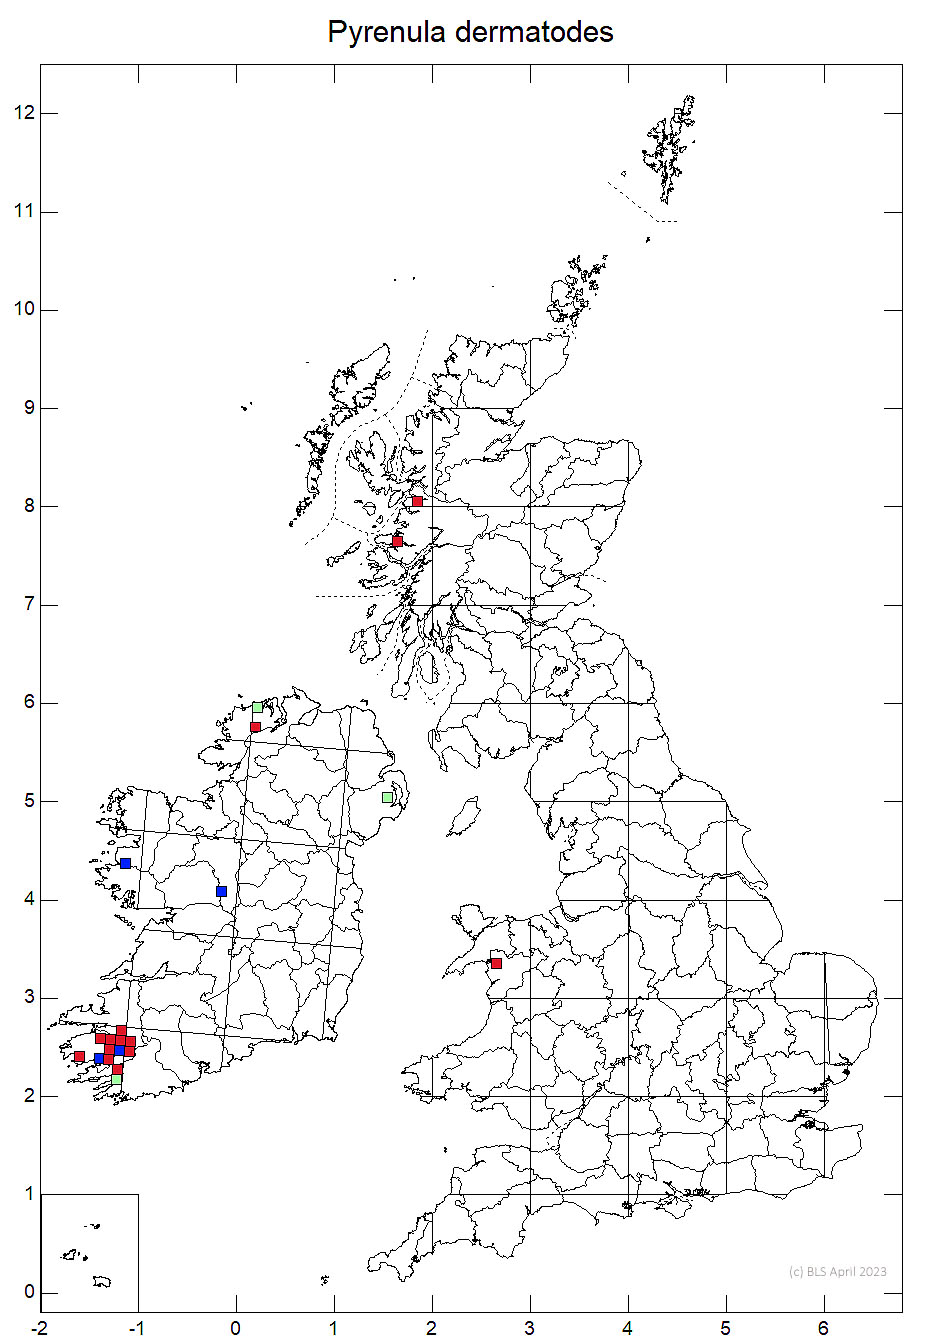 Pyrenula dermatodes 10km sq distribution map